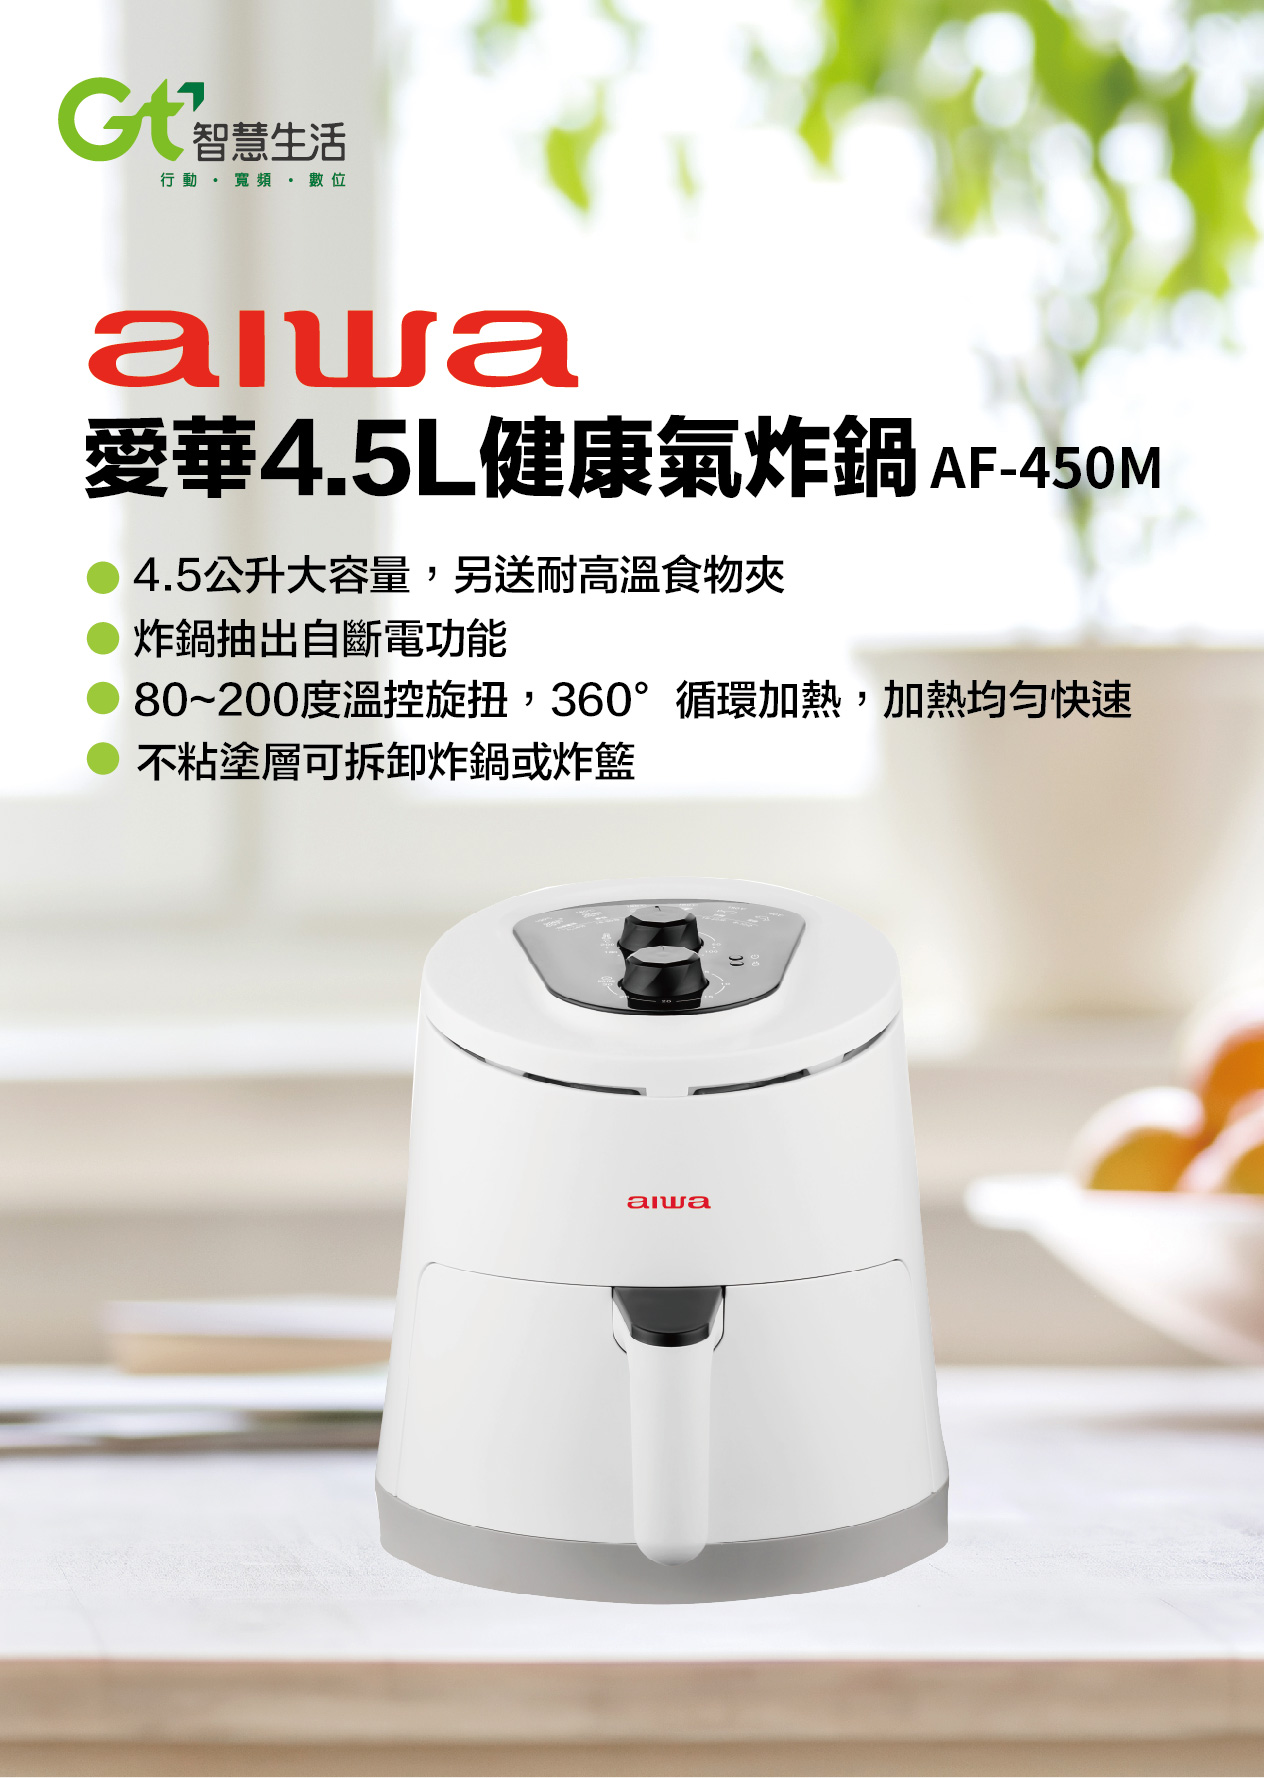 AIWA愛華 4.5L健康氣炸鍋爐AF-450M_介紹